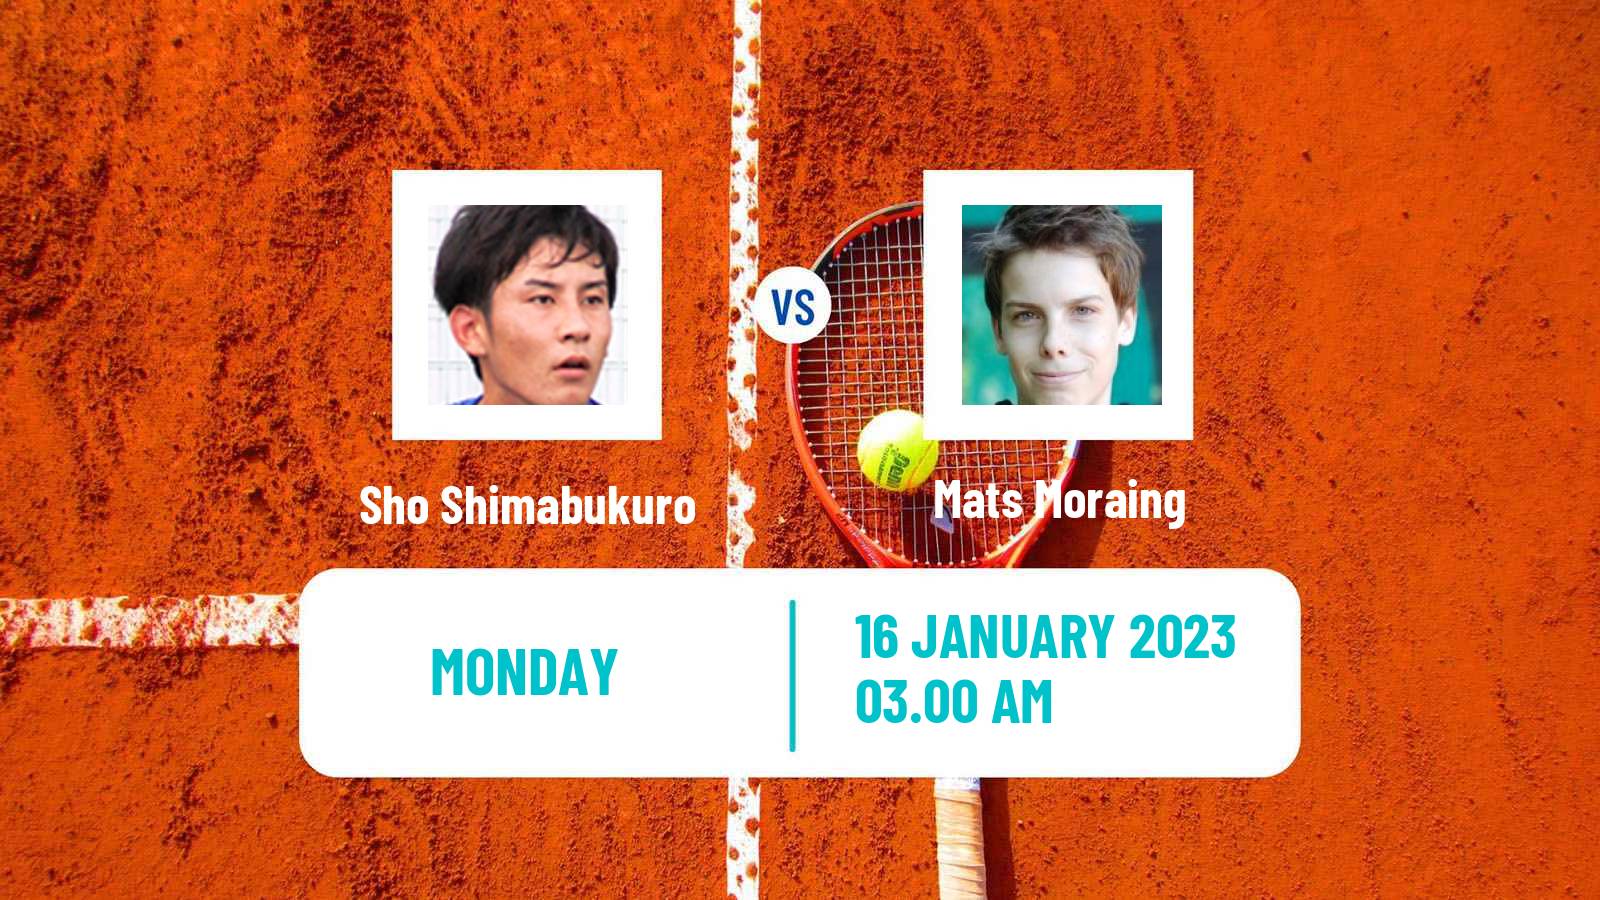 Tennis ATP Challenger Sho Shimabukuro - Mats Moraing